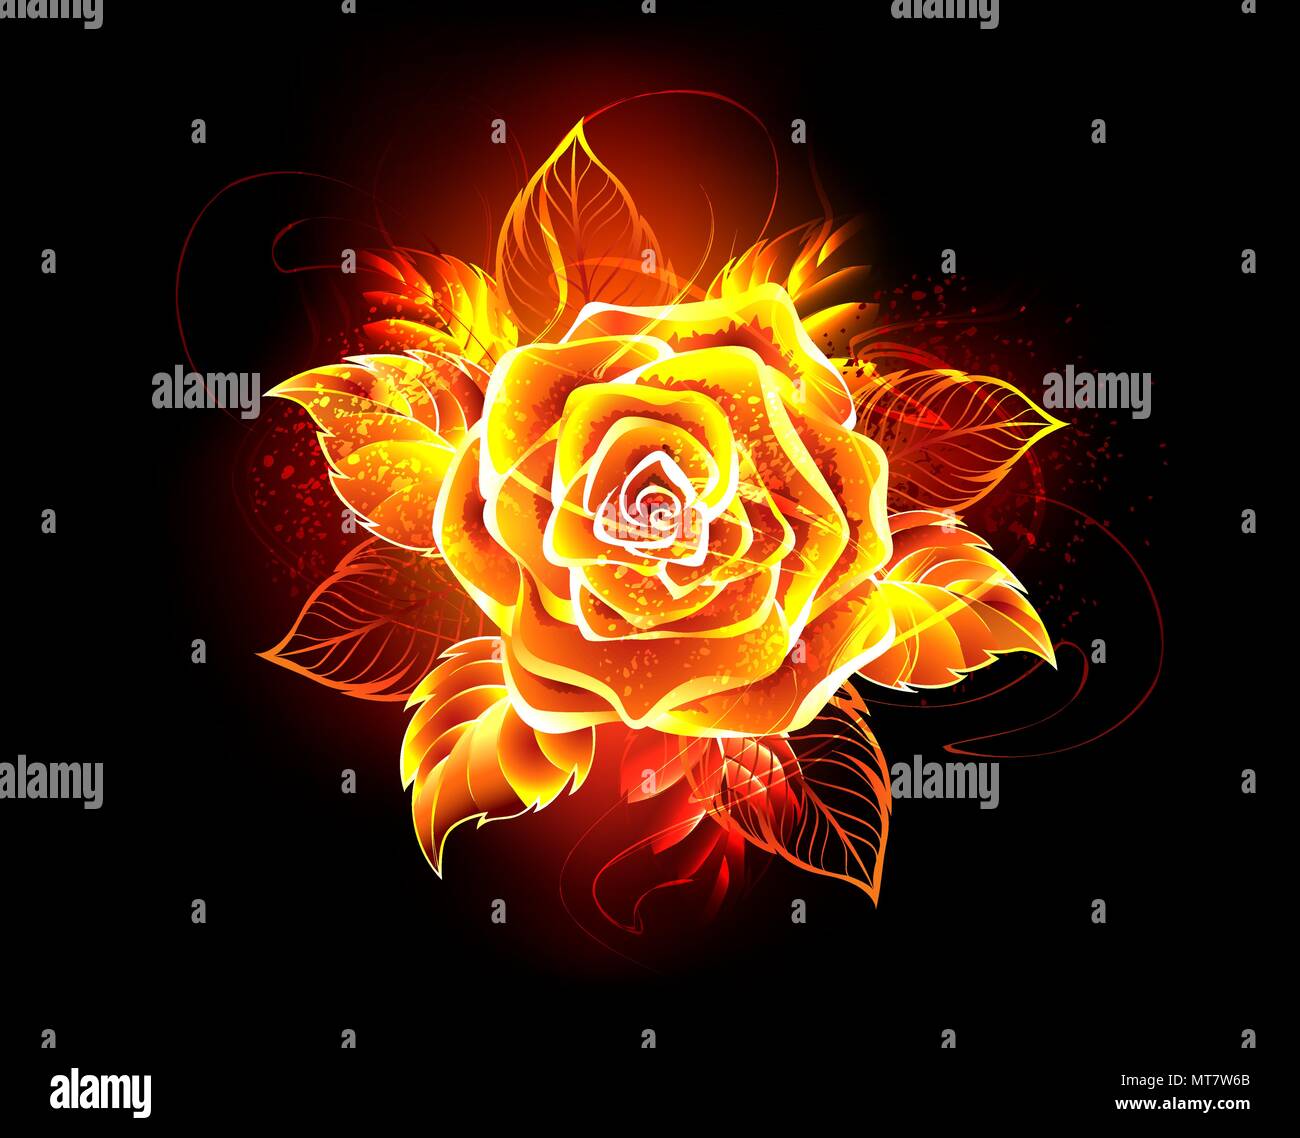 Rose on fire -Fotos und -Bildmaterial in hoher Auflösung – Alamy